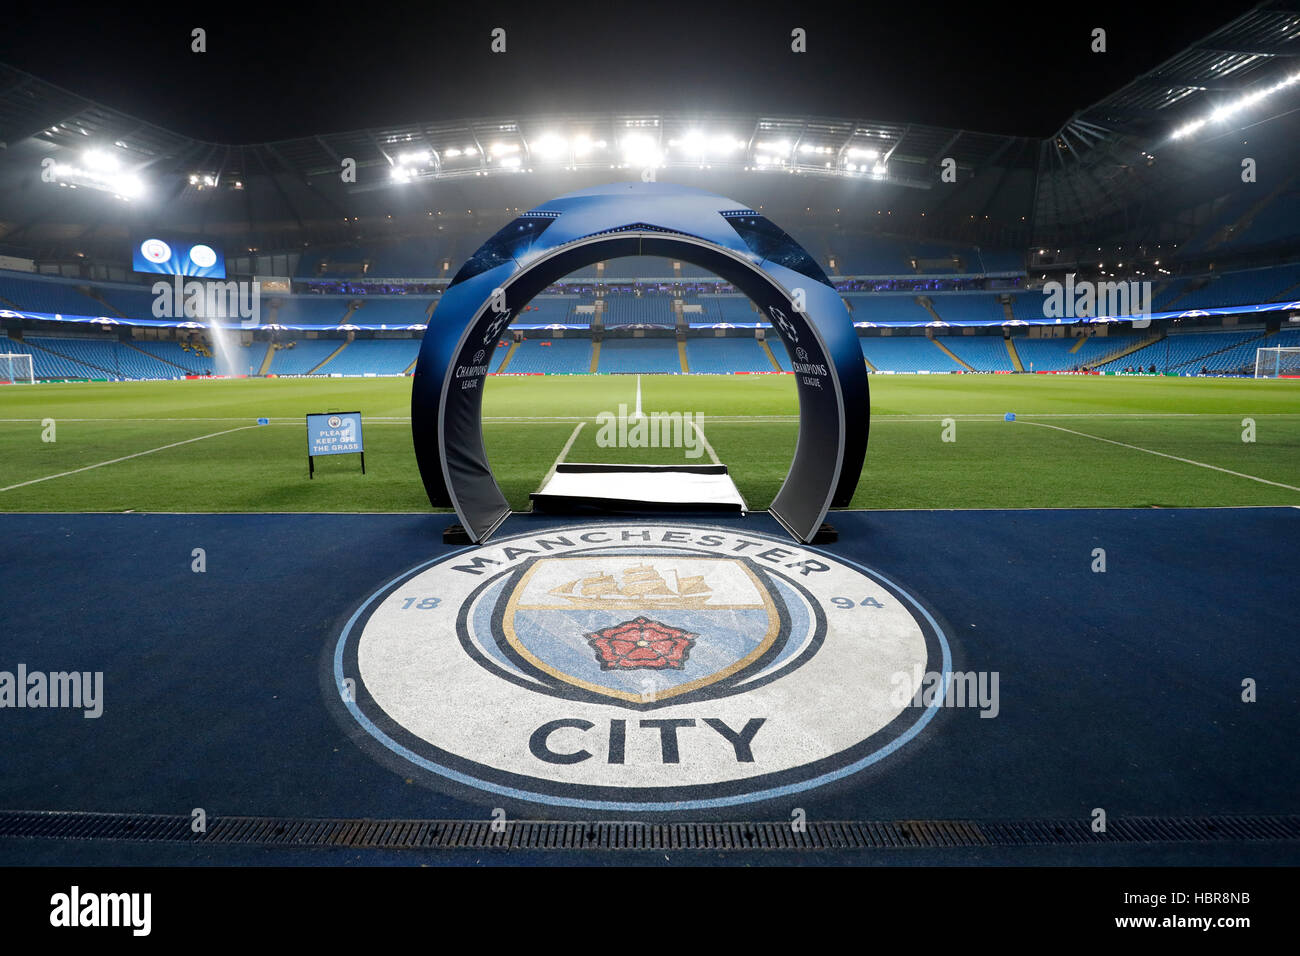 Une vue générale de Manchester City et de l'UEFA Champions League de marque dans l'Etihad avant le coup d'envoi de la Ligue des Champions, match du groupe C à l'Etihad Stadium, Manchester. Banque D'Images